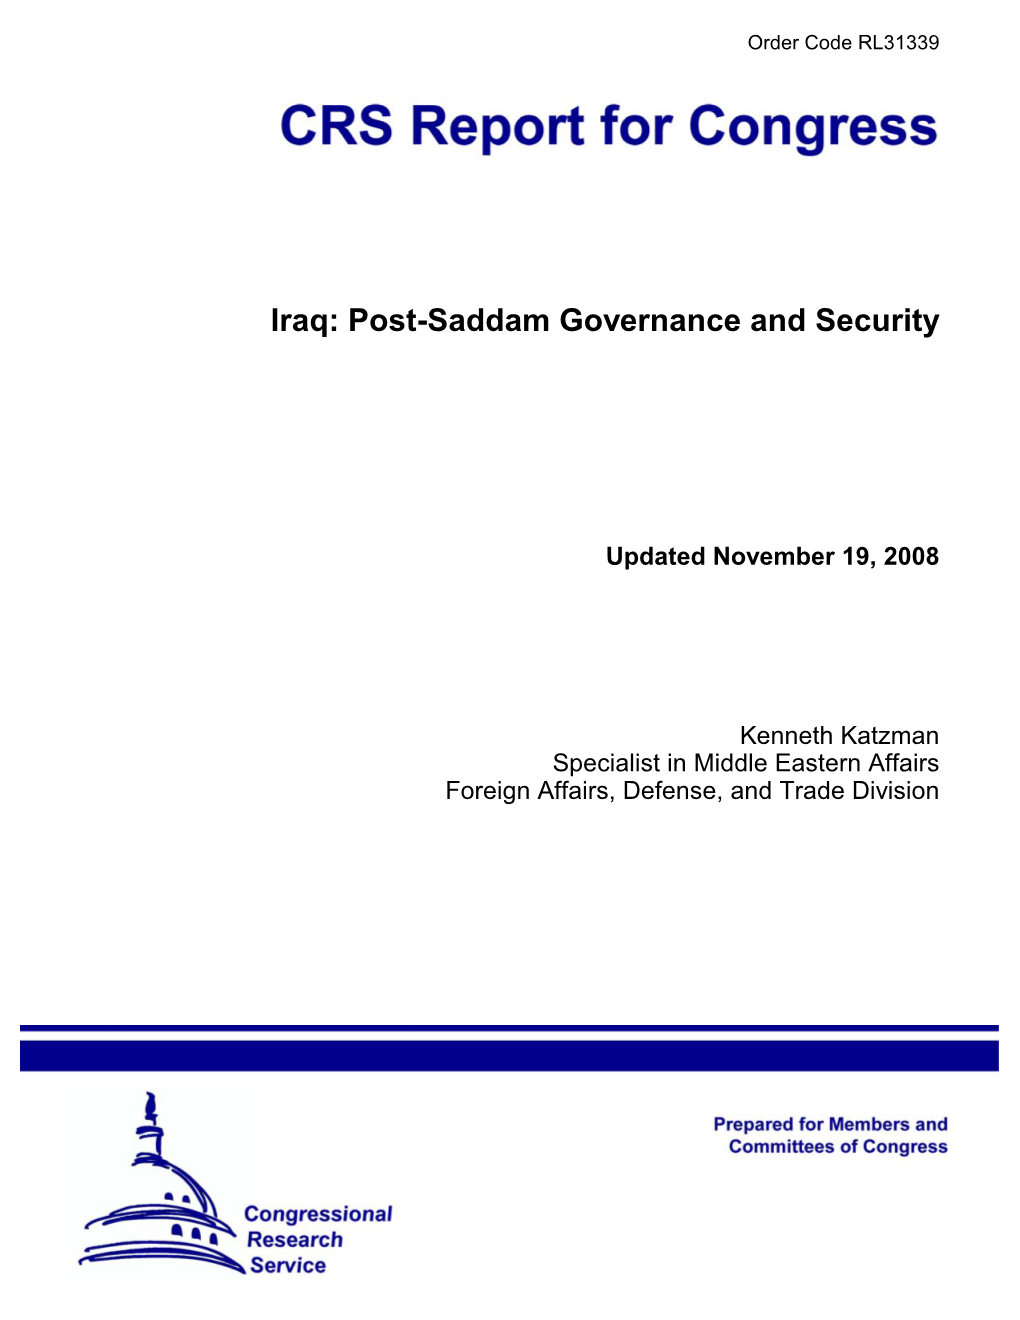 Post-Saddam Governance and Security